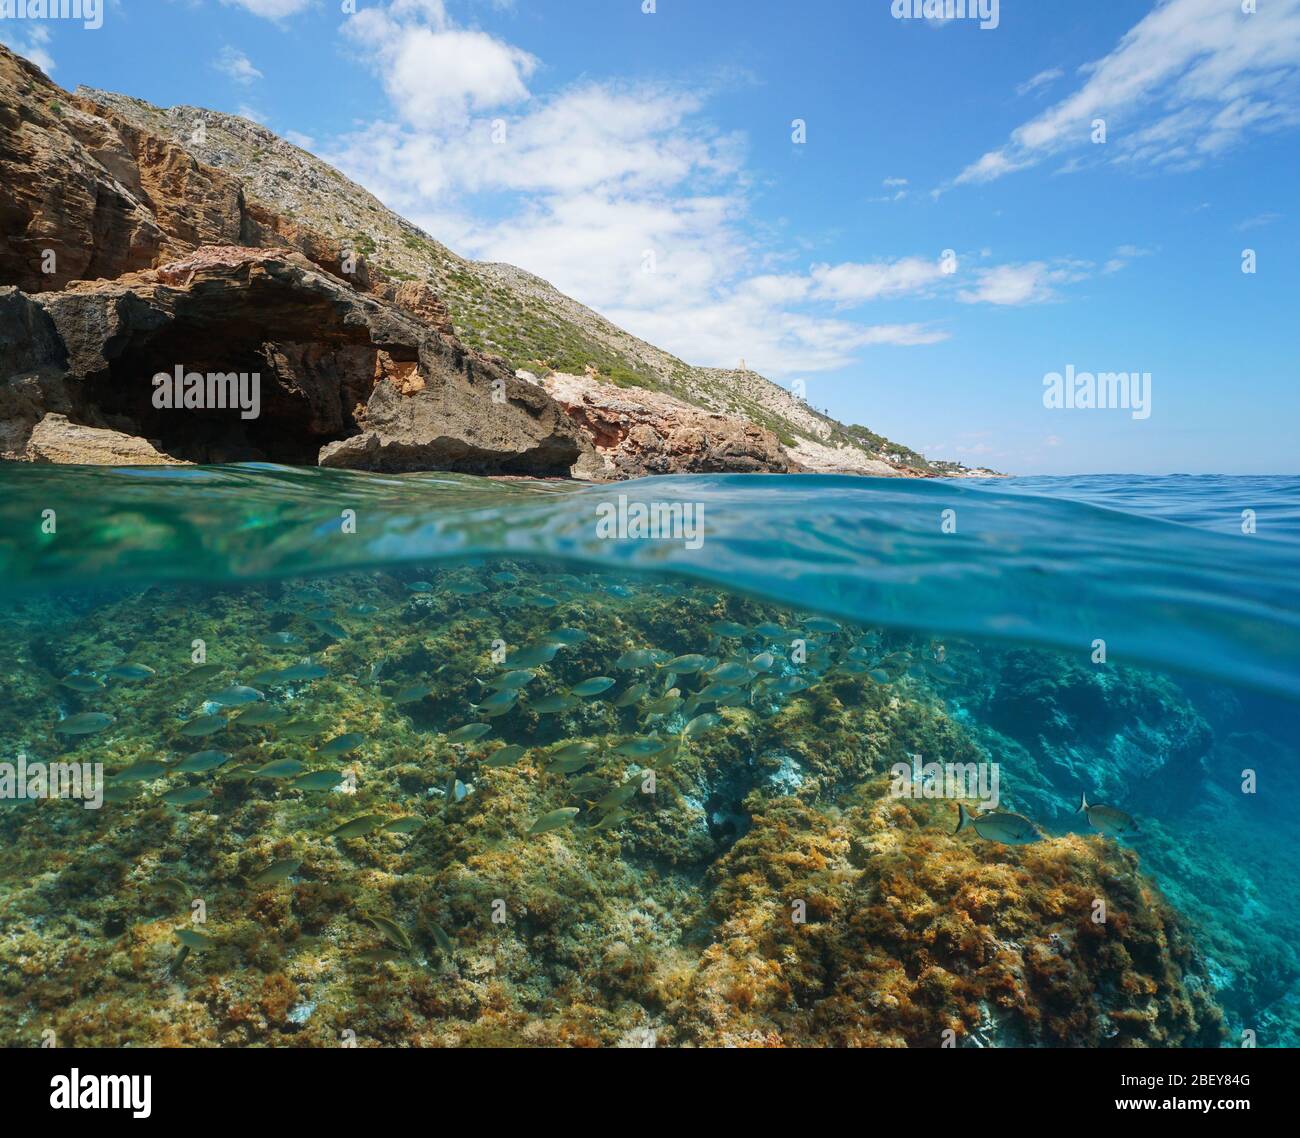 Mare Mediterraneo costa rocciosa in Spagna con pesce subacqueo, vista su e sotto la superficie dell'acqua, Costa Blanca, Denia, Alicante, Valencia Foto Stock